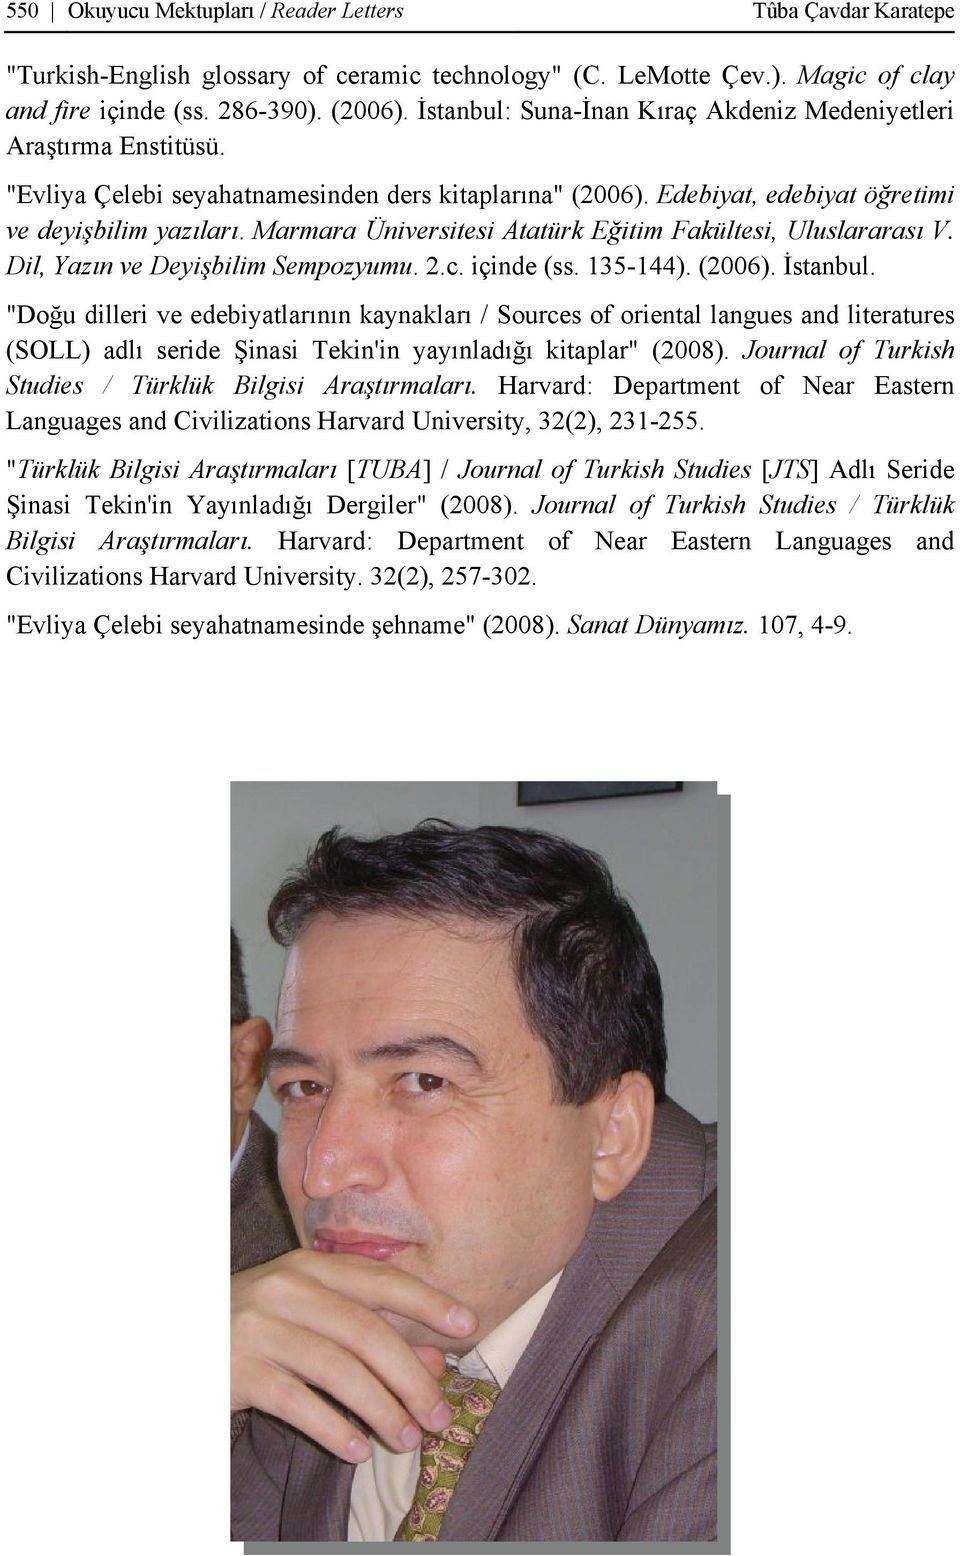 Marmara Üniversitesi Atatürk Eğitim Fakültesi, Uluslararası V. Dil, Yazın ve Deyişbilim Sempozyumu. 2.c. içinde (ss. 135-144). (2006). İstanbul.